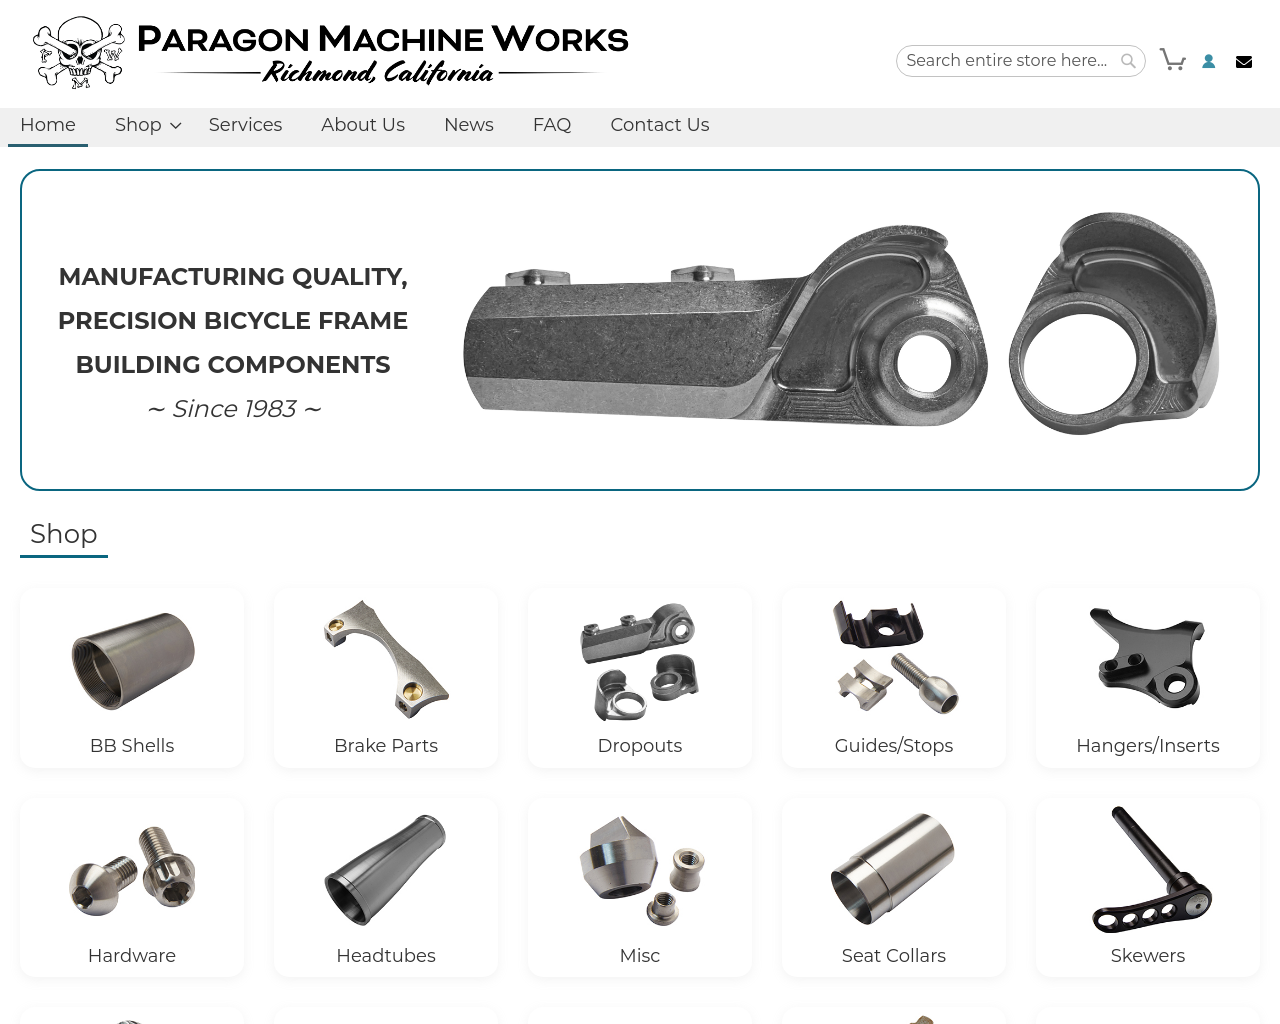 paragonmachineworks.com